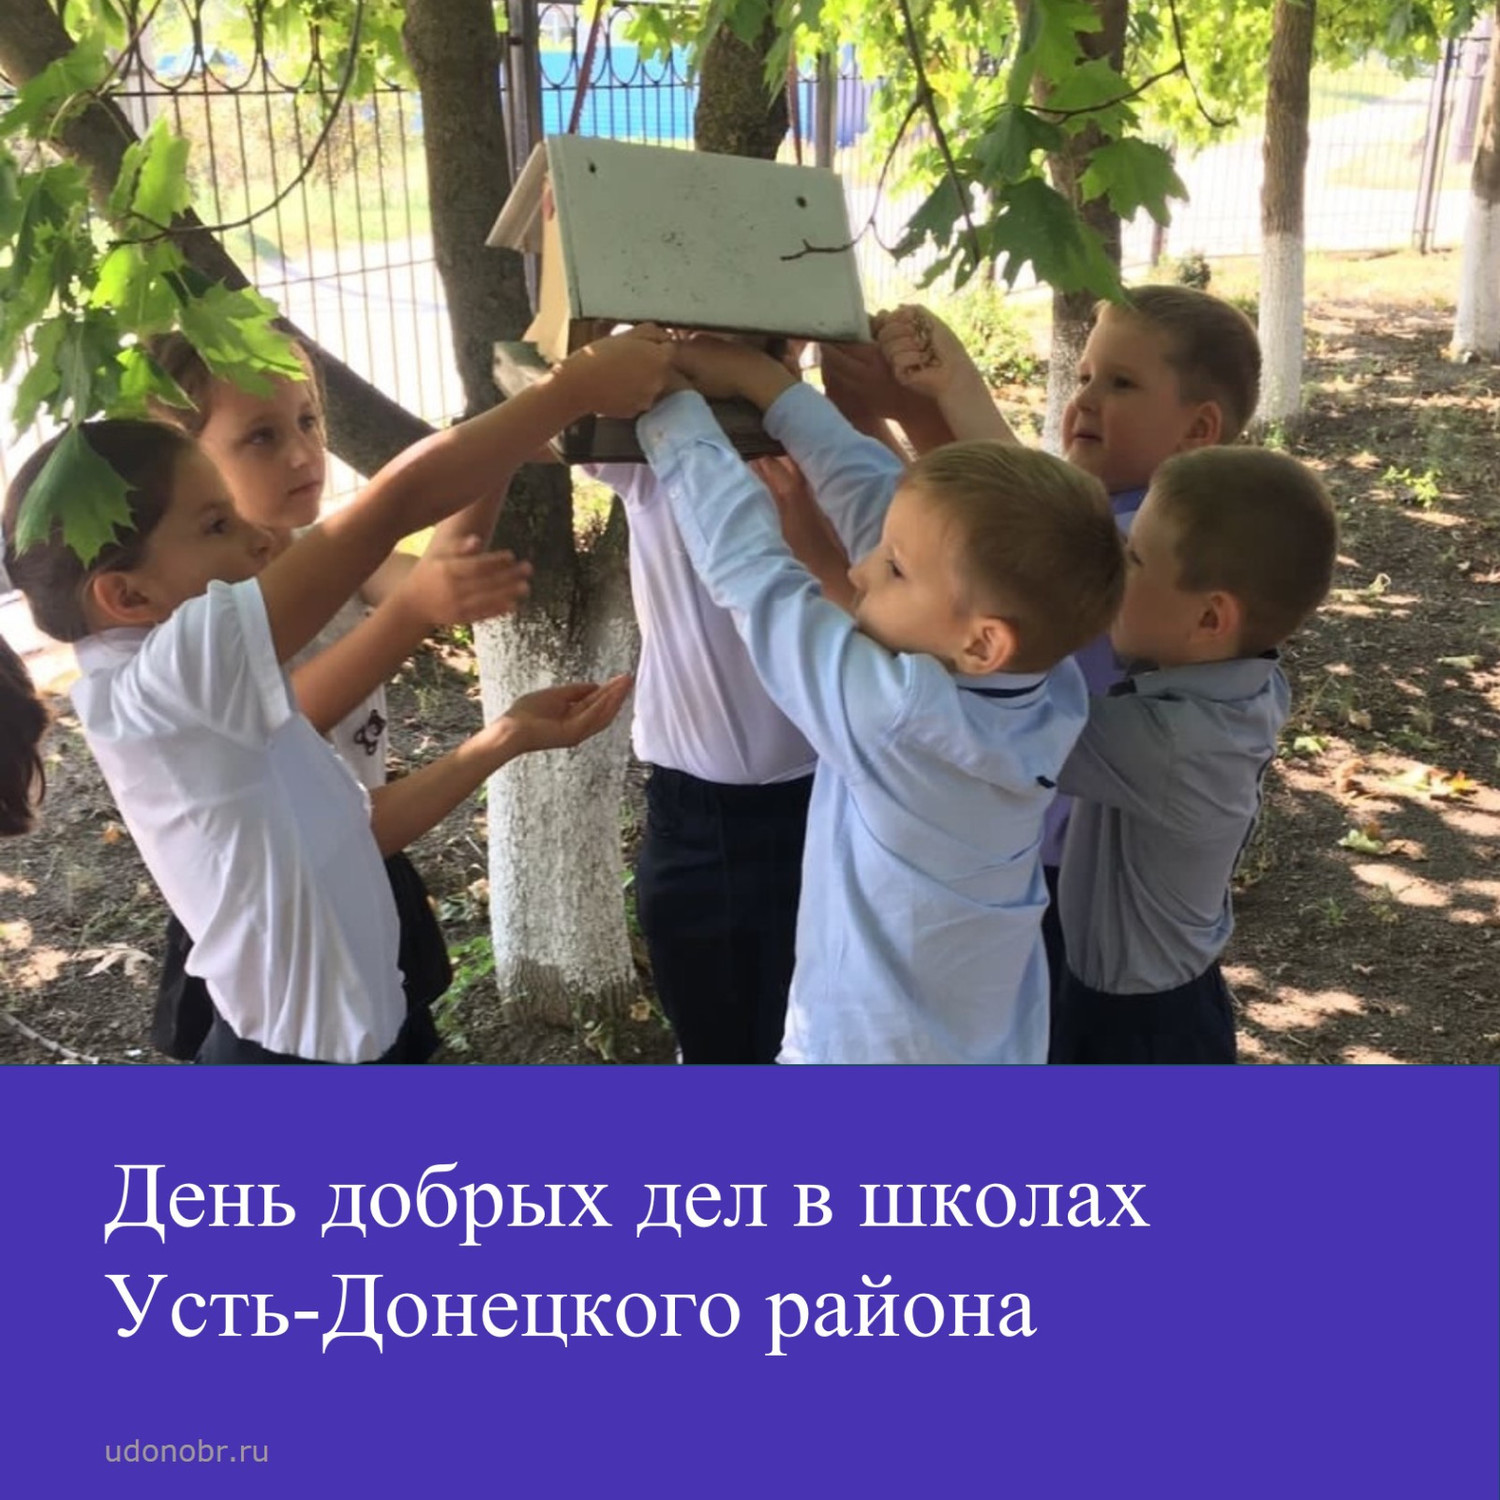 День добрых дел в школах Усть-Донецкого района